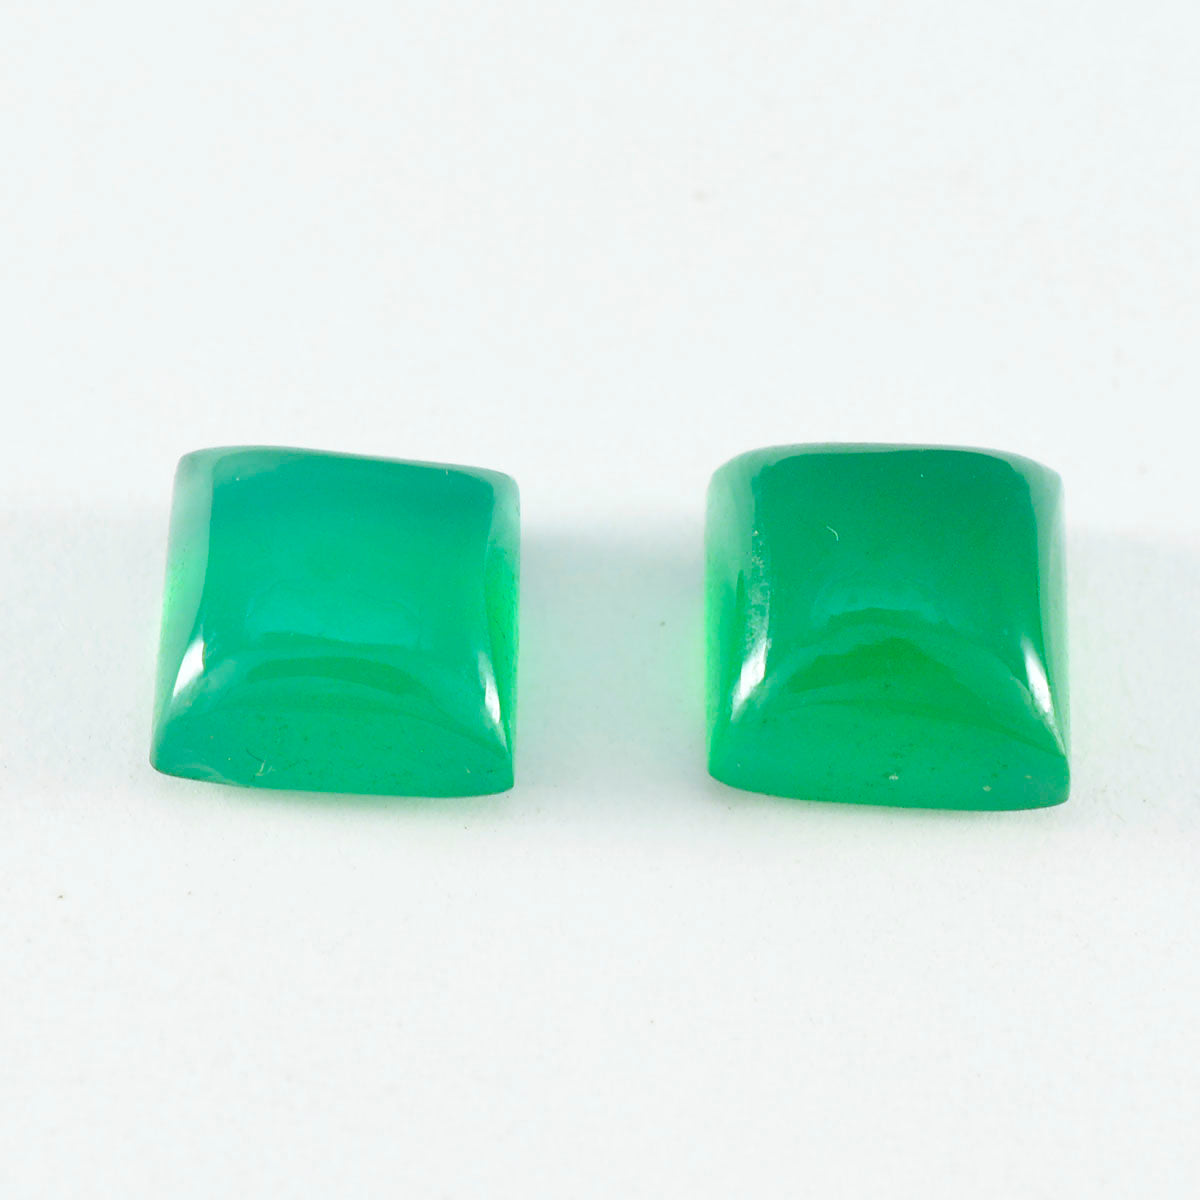 Riyogems 1 Stück grüner Onyx-Cabochon, 10 x 10 mm, quadratische Form, hübsche Qualitätsedelsteine